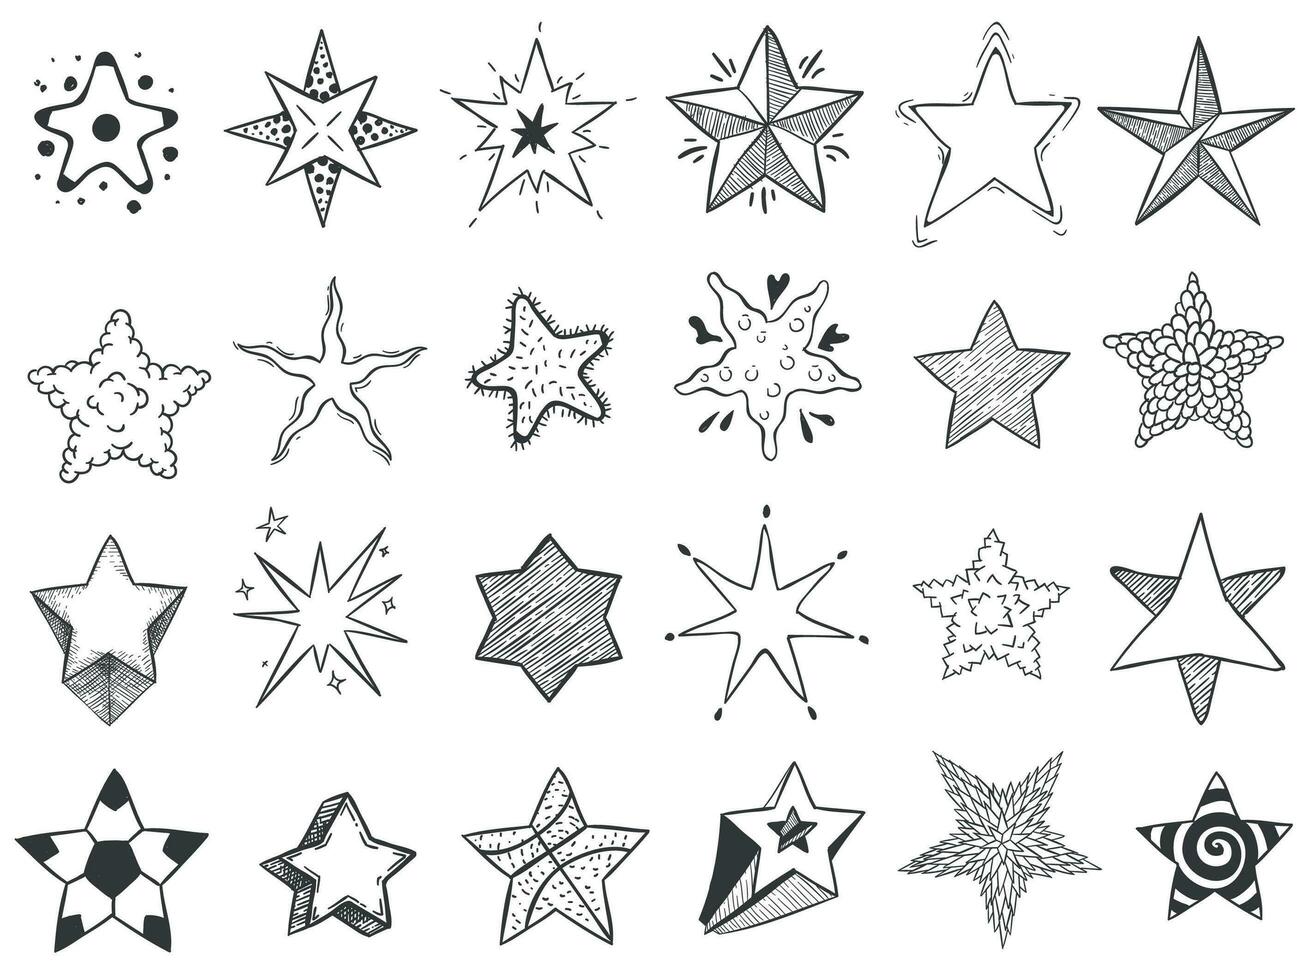 bosquejo estrellas. garabatear estrella forma, linda mano dibujado Starburst y clasificación estrellas vector conjunto